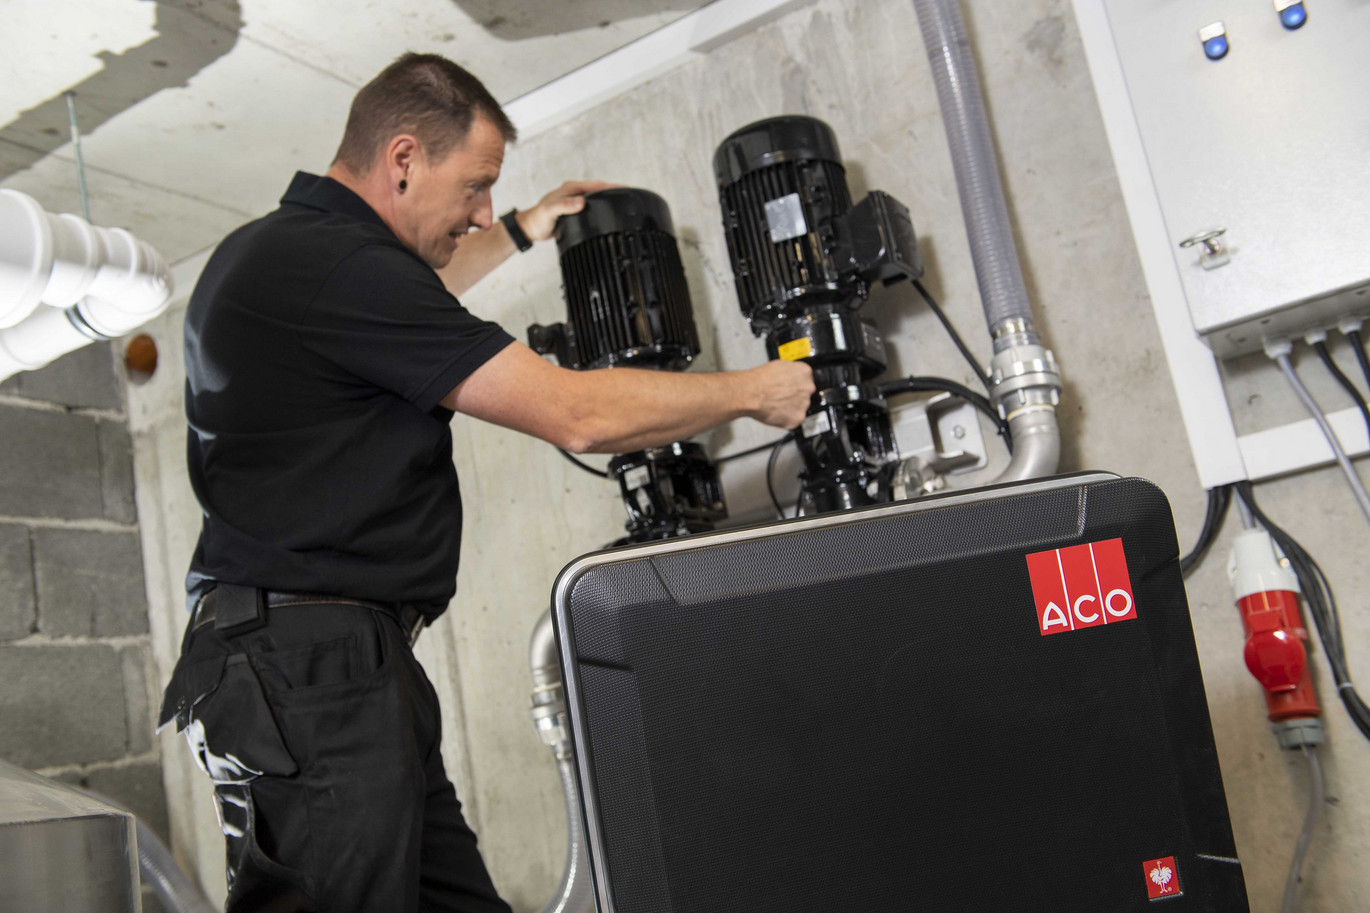 Ein Techniker arbeitet an zwei großen schwarzen Pumpen in einem technischen Raum. Im Vordergrund ist ein schwarzes Gerät mit dem ACO-Logo zu sehen